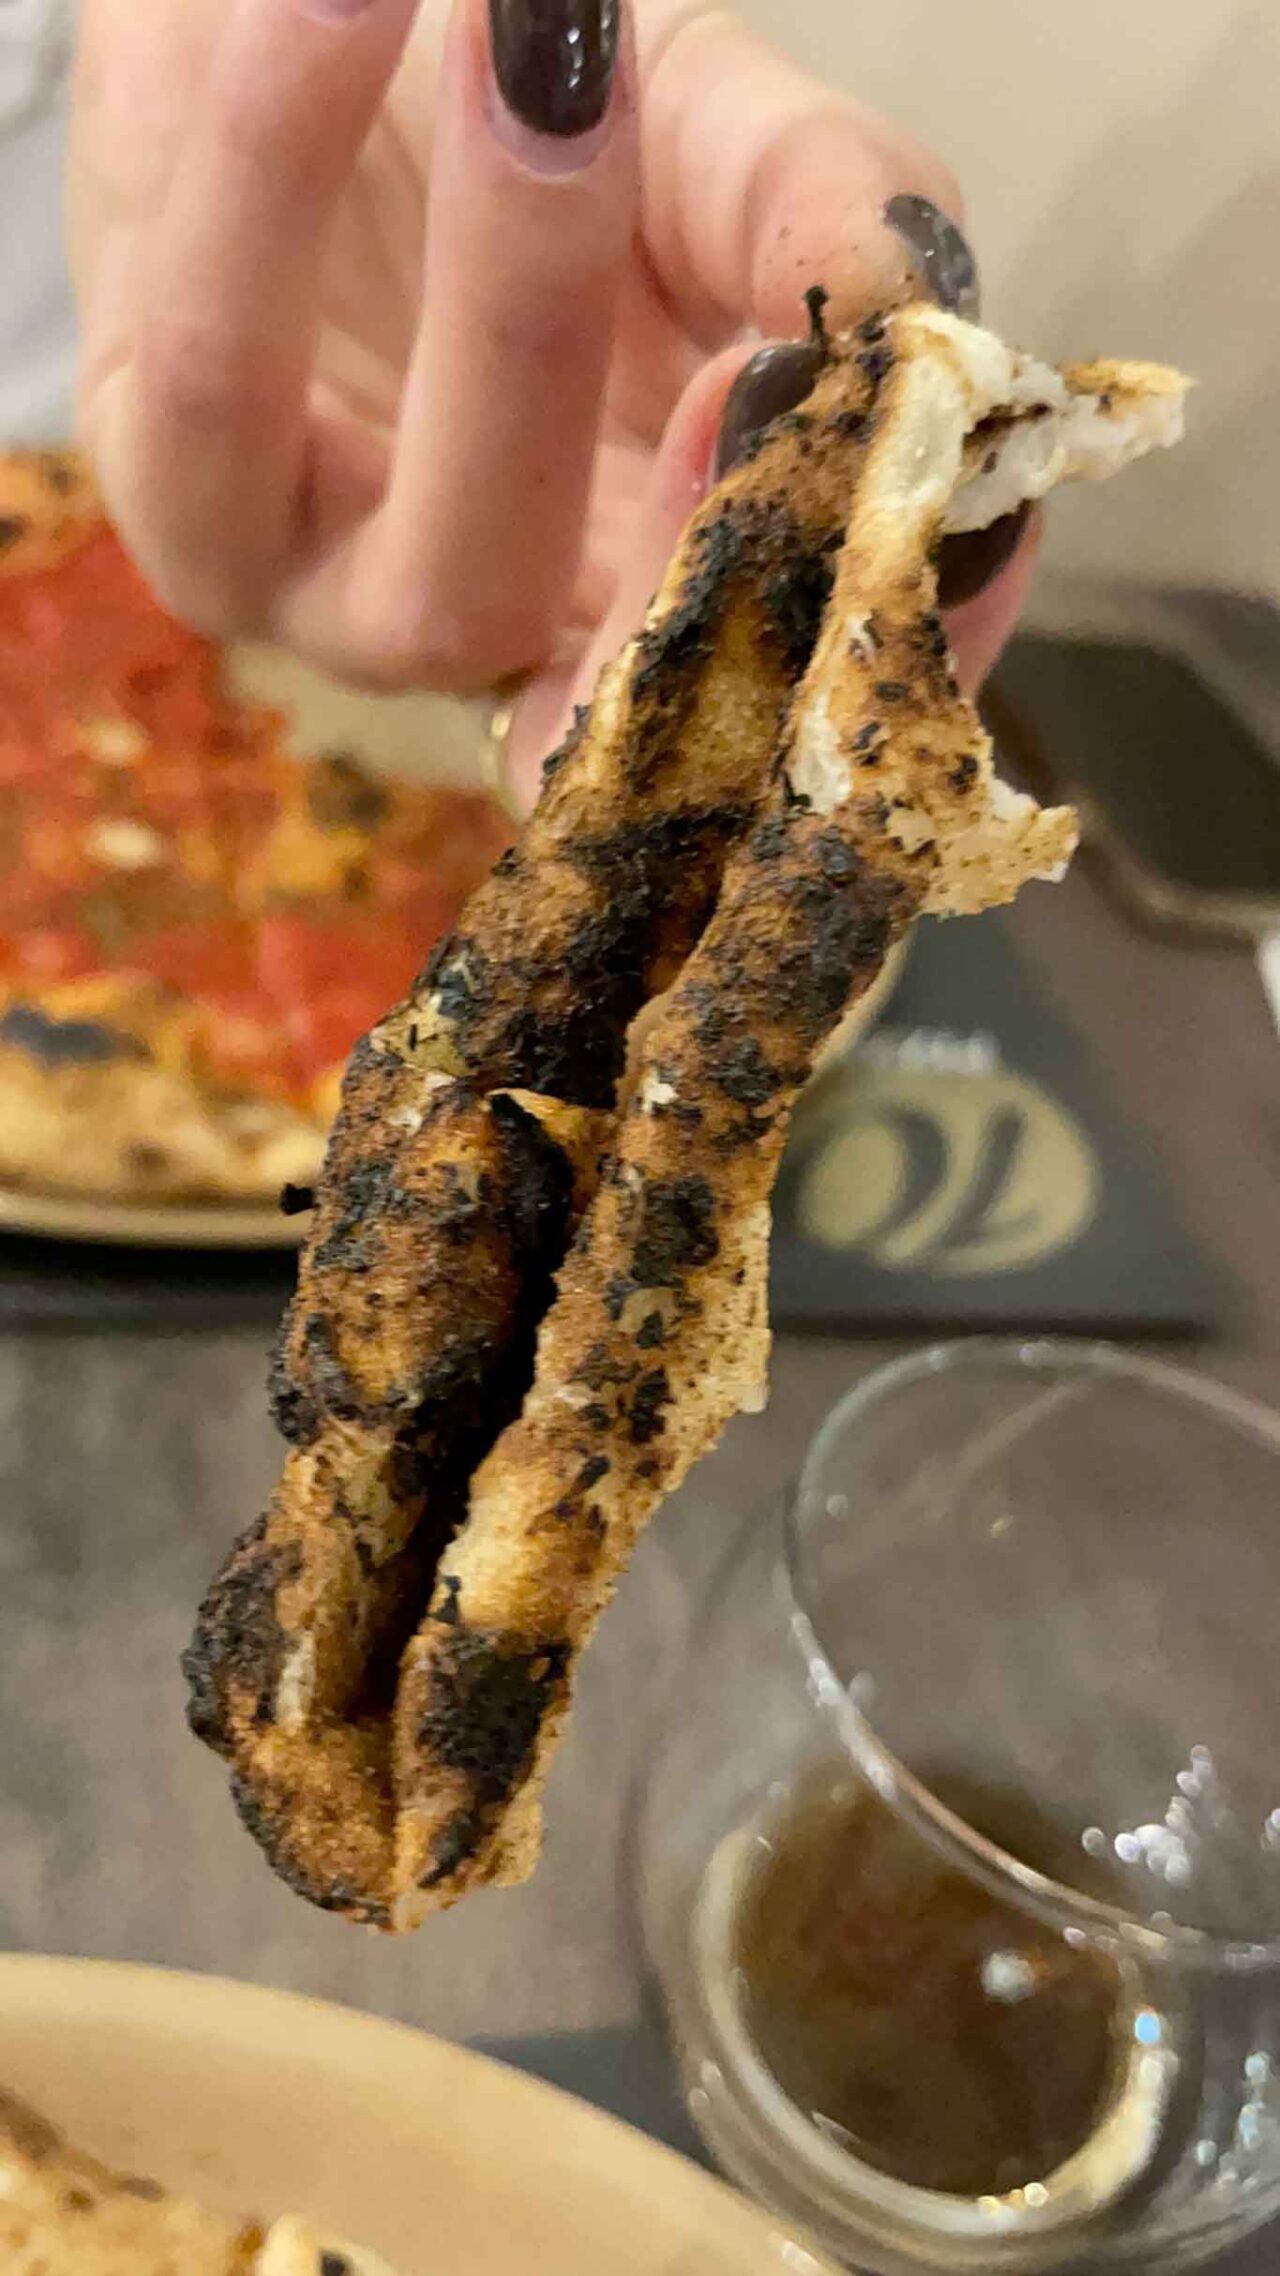 pizza bruciata recensione negativa 10 Diego Vitagliano